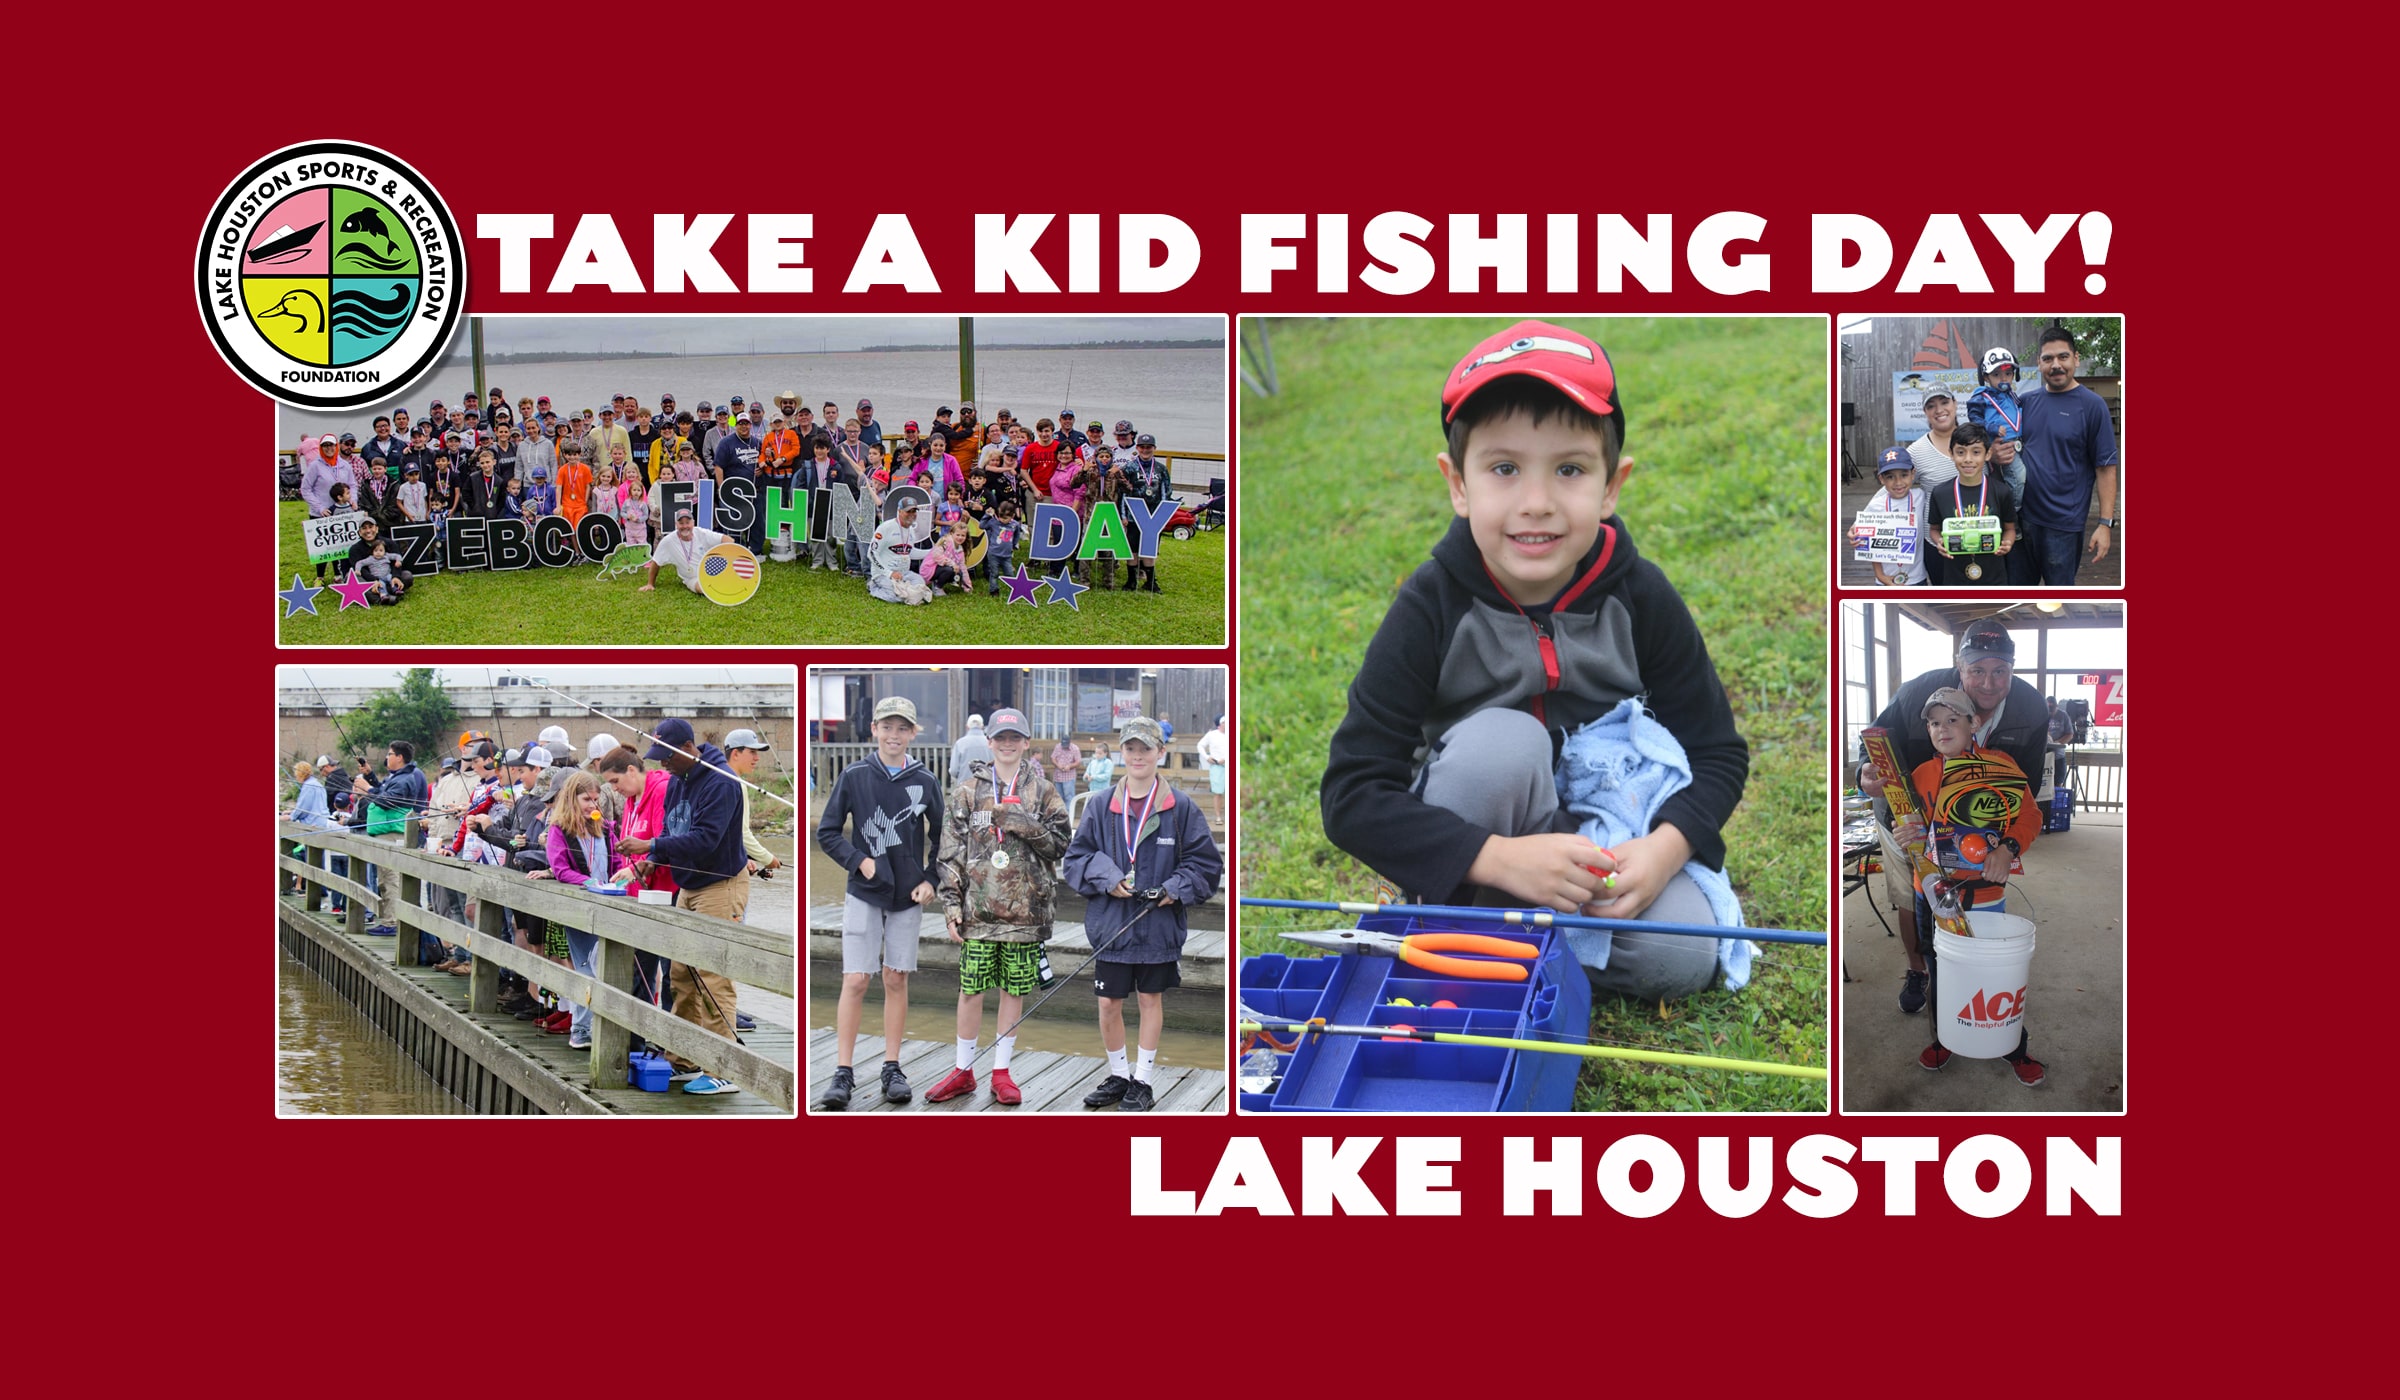 Take a kid fishing day on lake houston